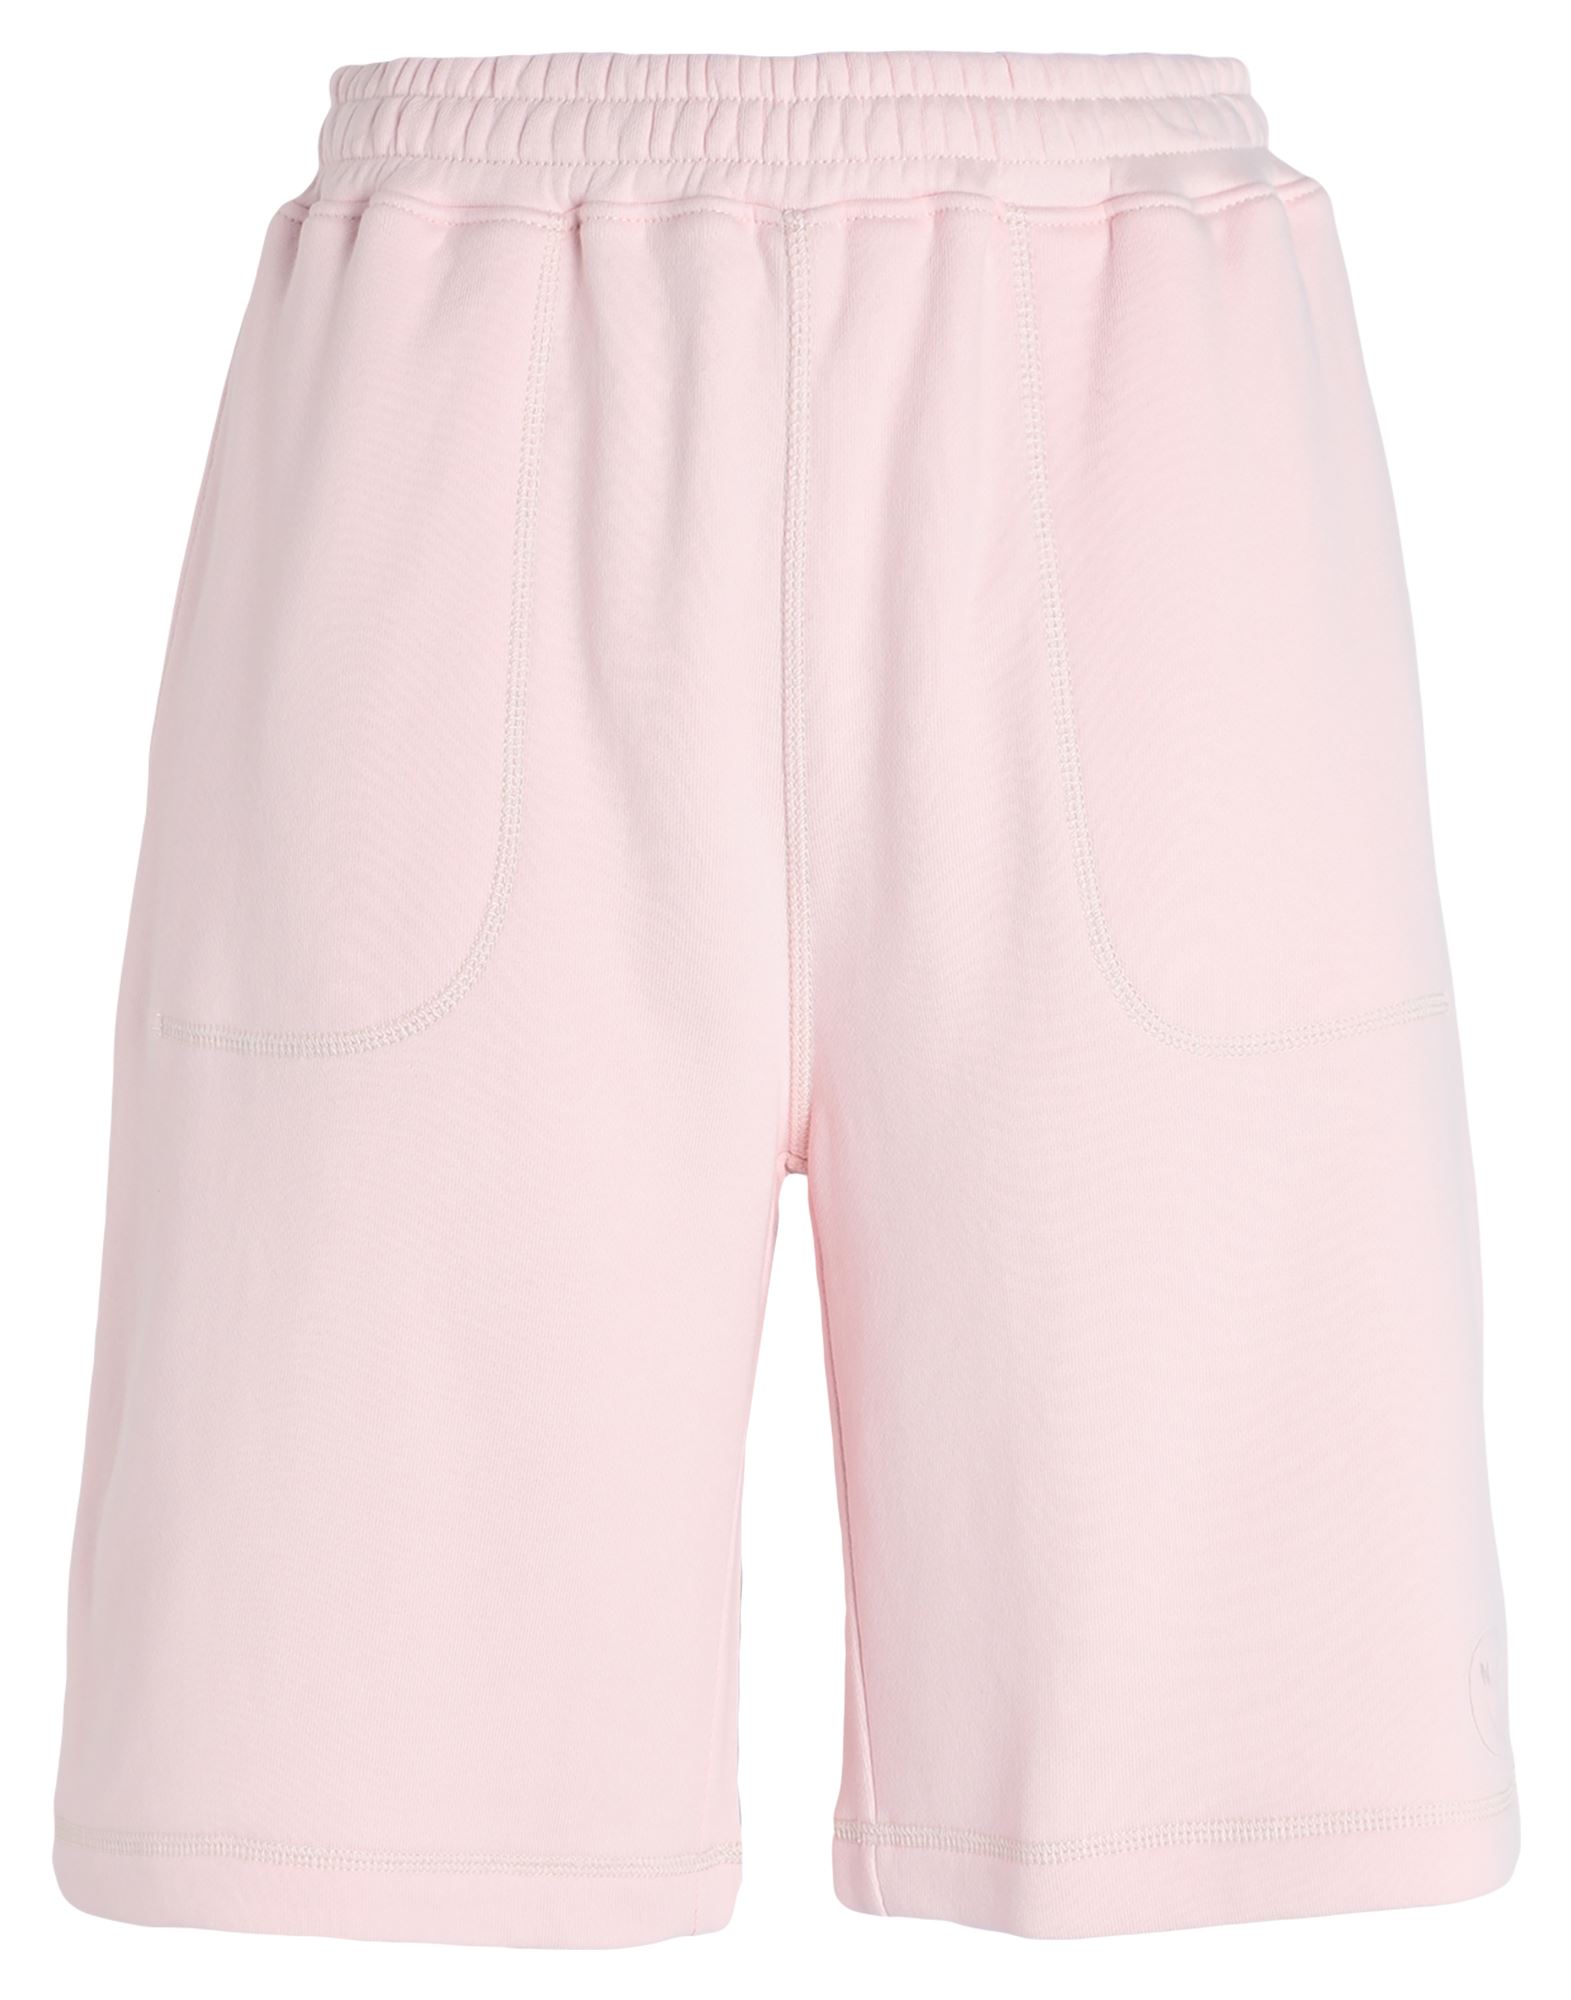 Ninety Percent Woman Shorts & Bermuda Shorts Pink Size S Organic Cotton